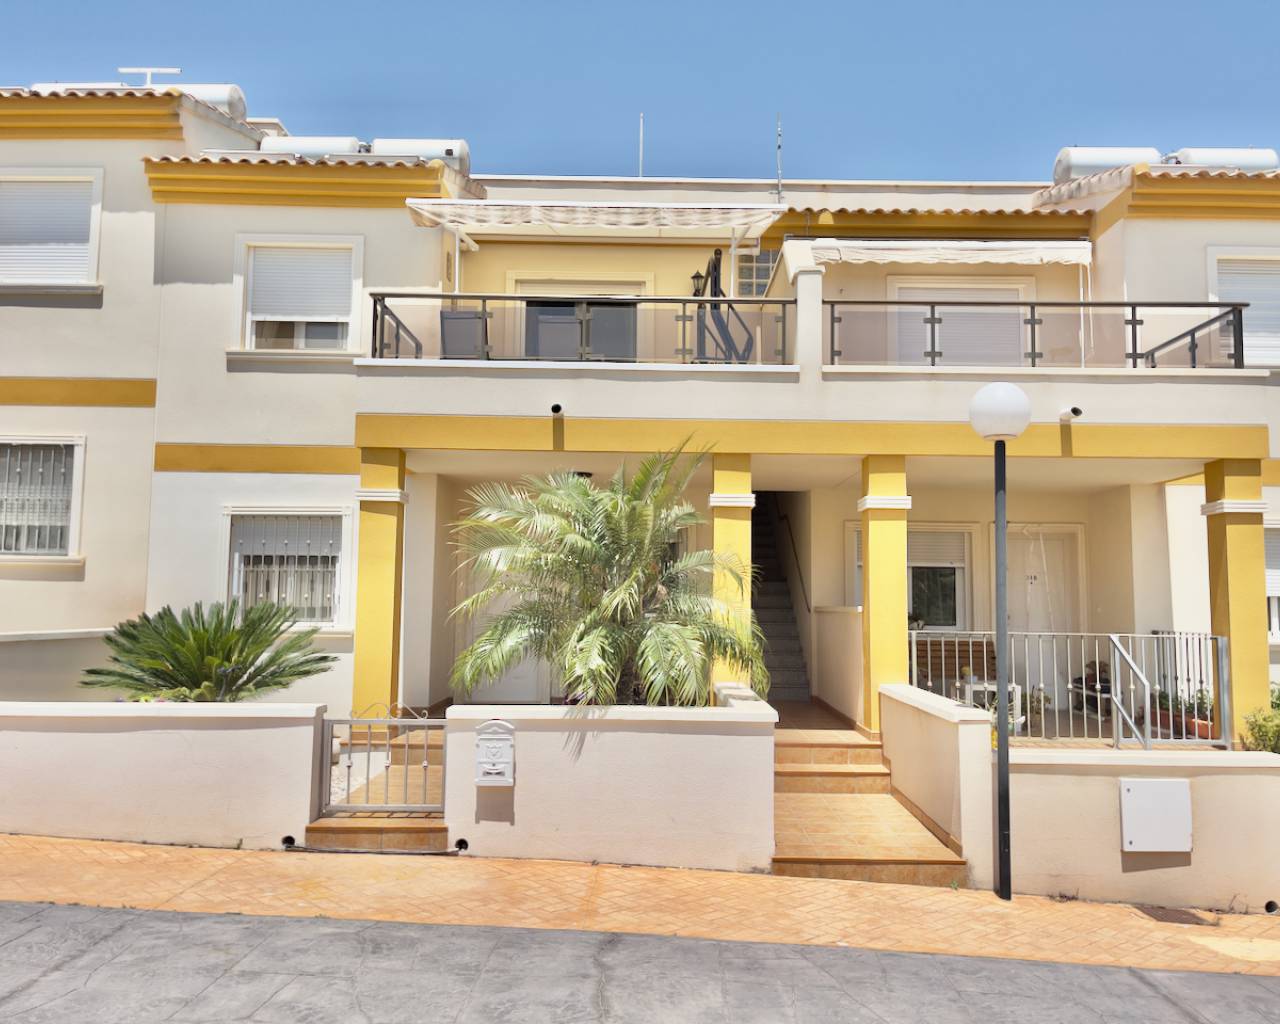 2 bedroom house / villa for sale in Bigastro, Costa Blanca